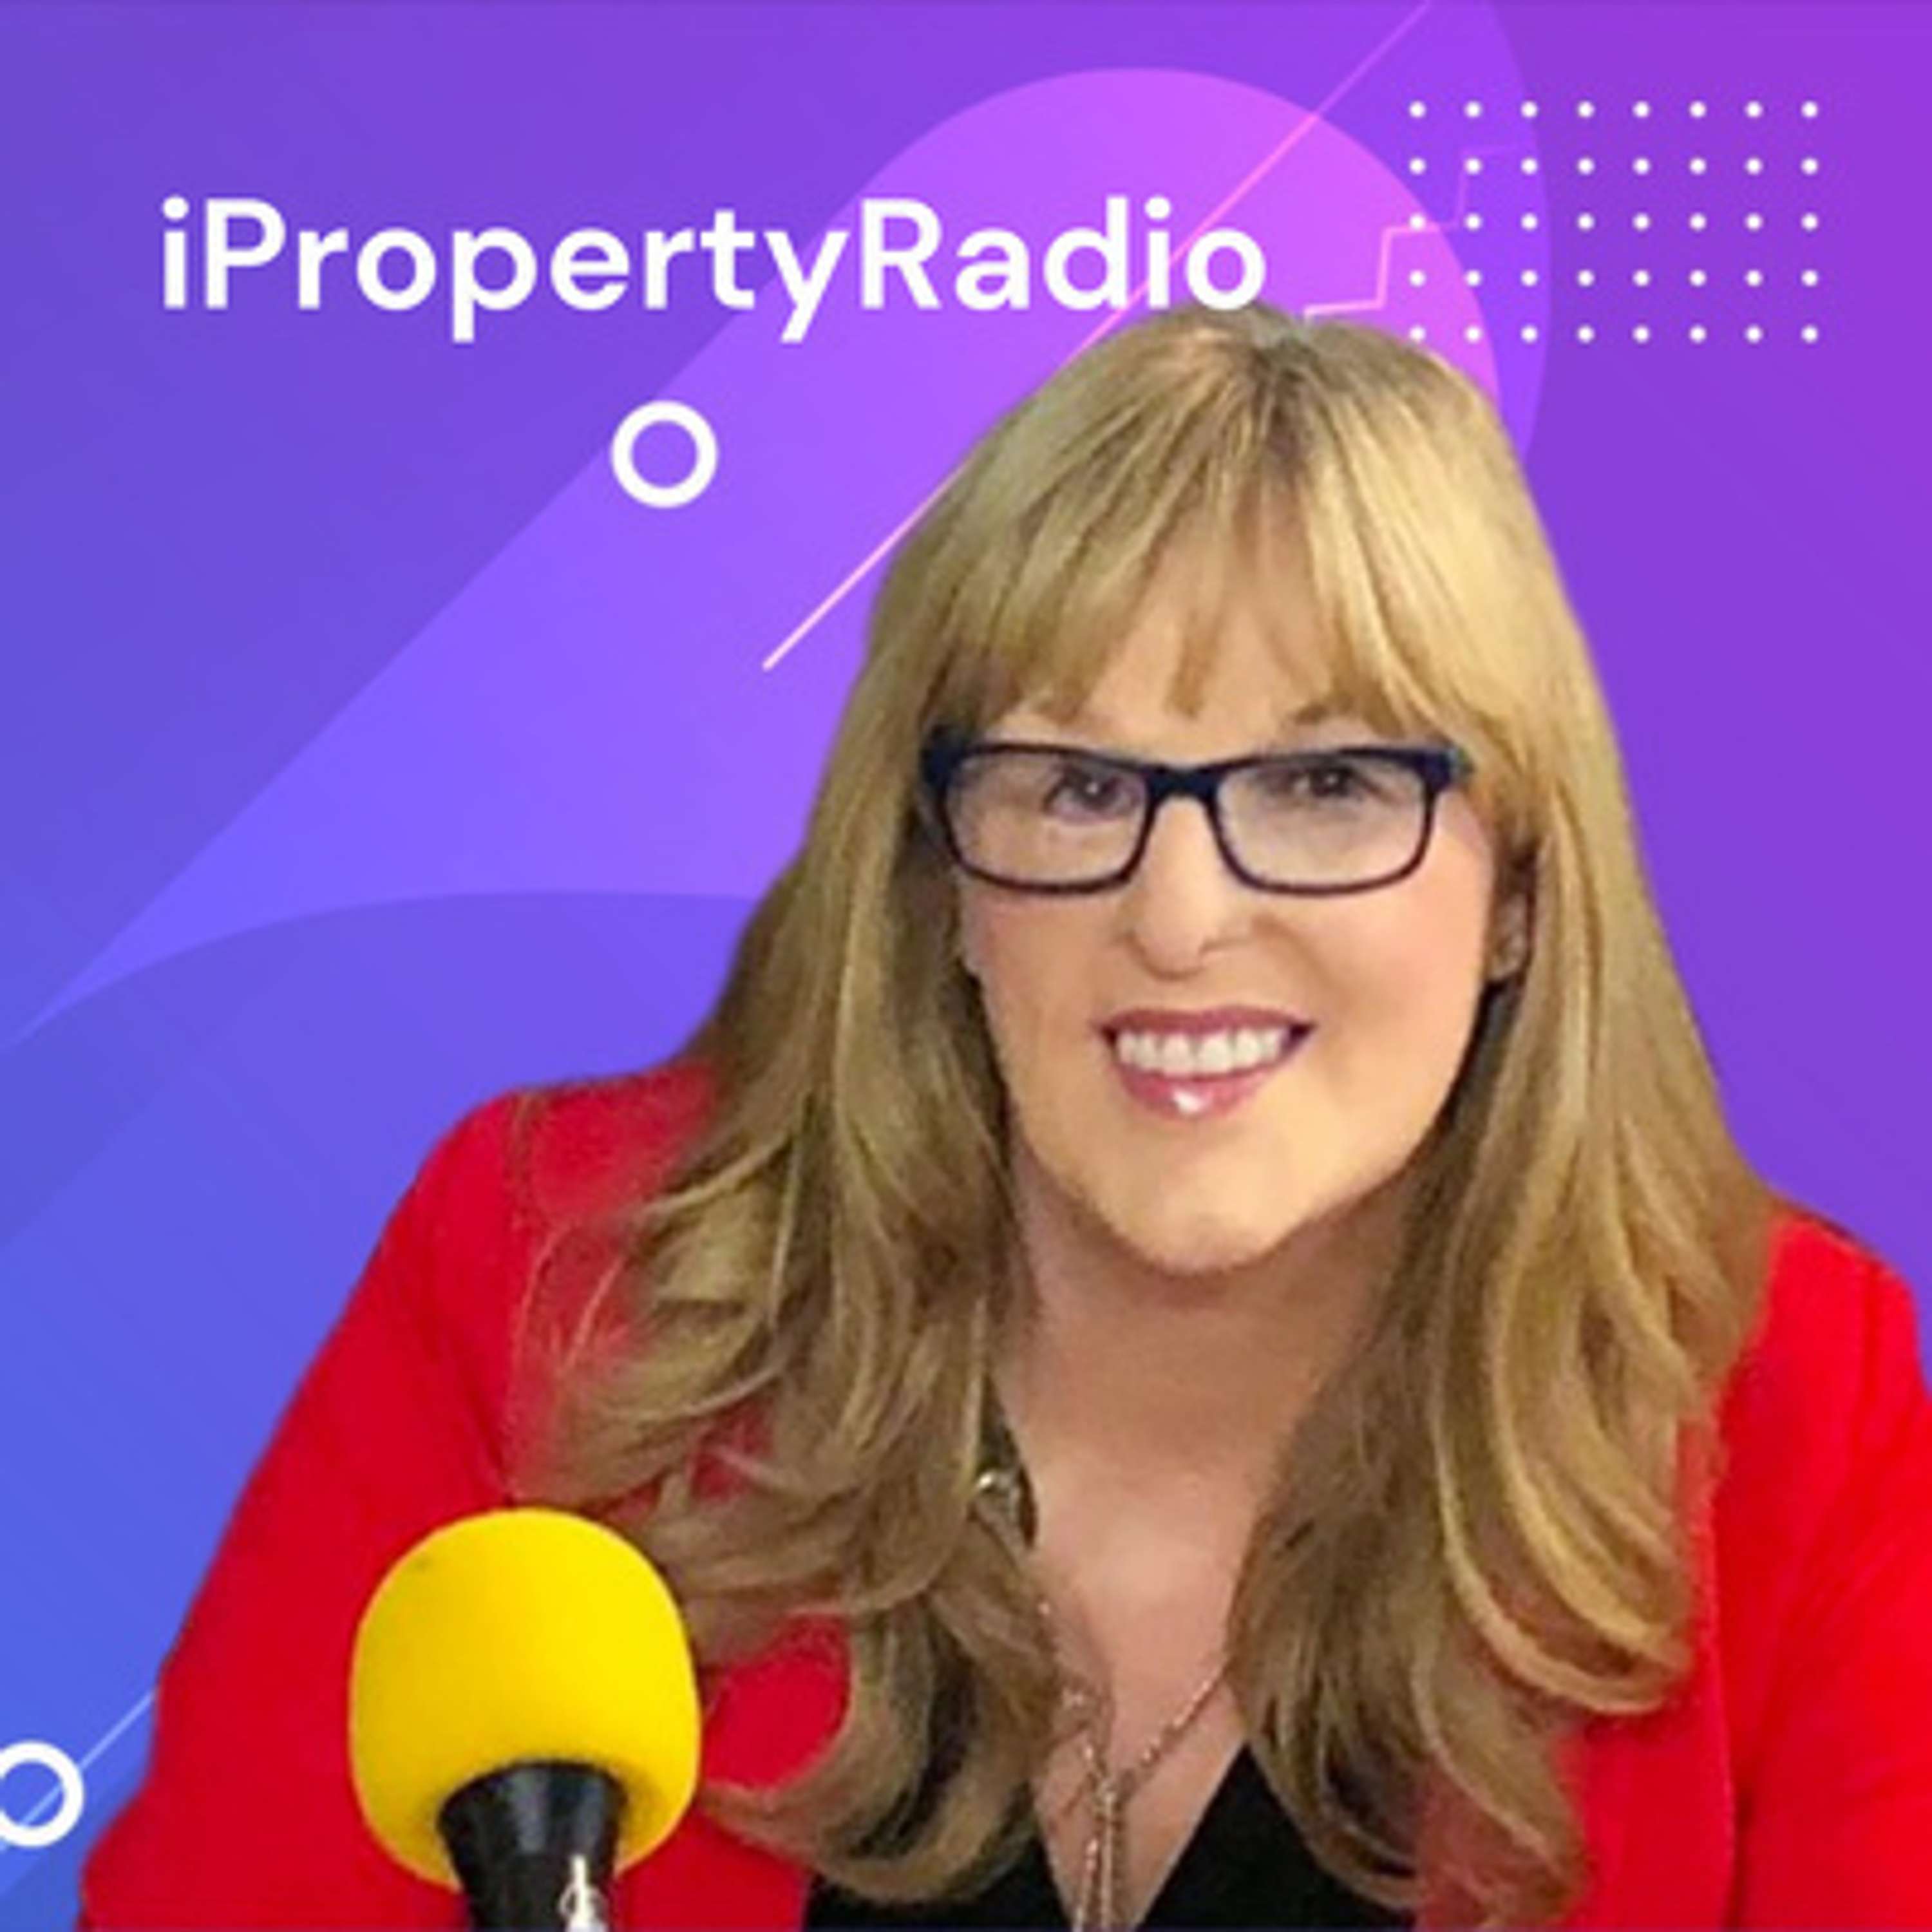 Ep.42 iPropertyRadio: Property Matters, November 19th 2019: